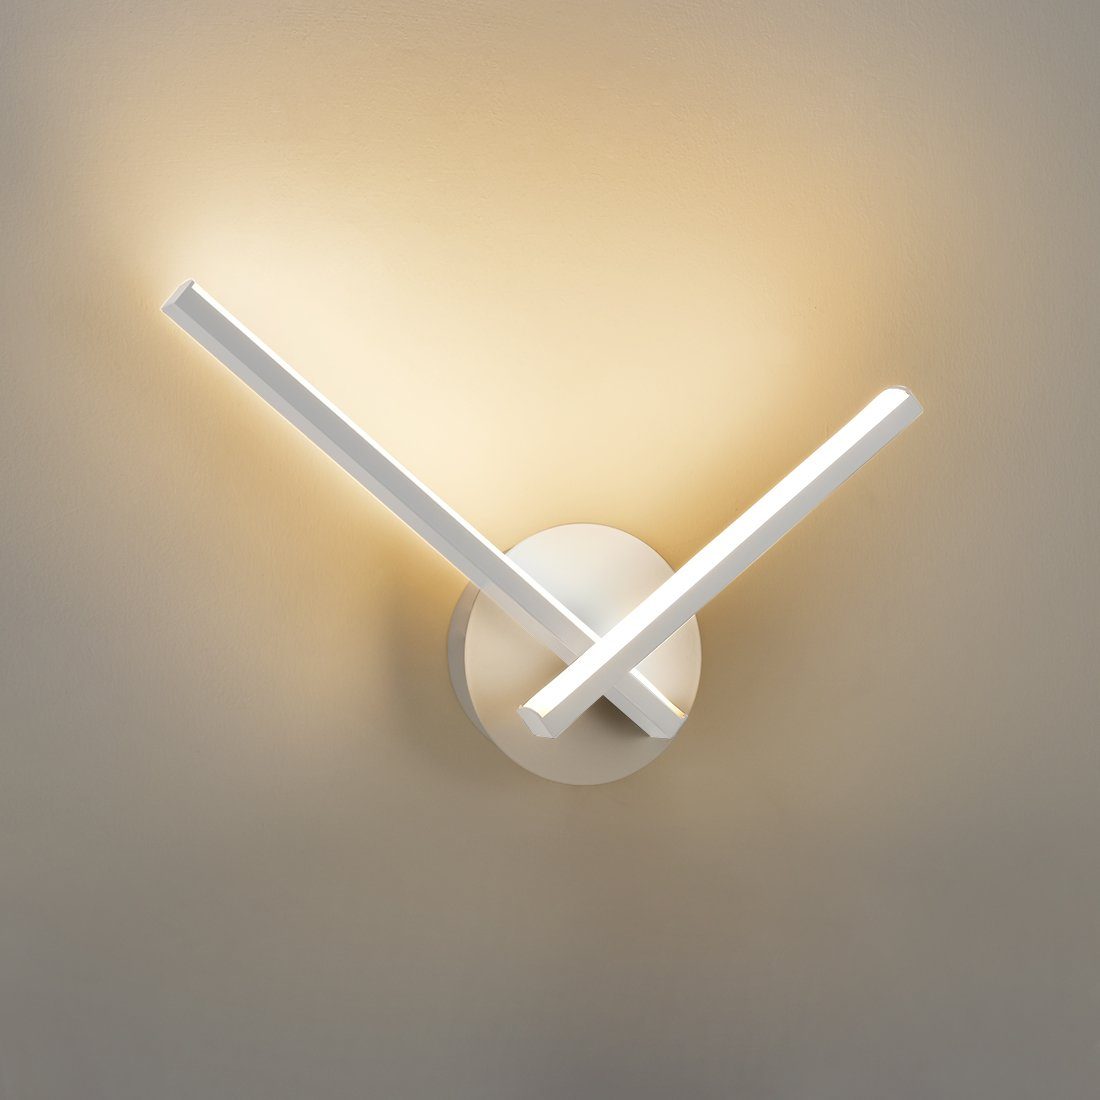 S'AFIELINA LED Wandleuchte Modern LED Wandlampe mit 3 Lichtfarben Wandbeleuchtung für Wohnzimmer, LED fest integriert, Warmweiß, Kaltweiß, Neutralweiß